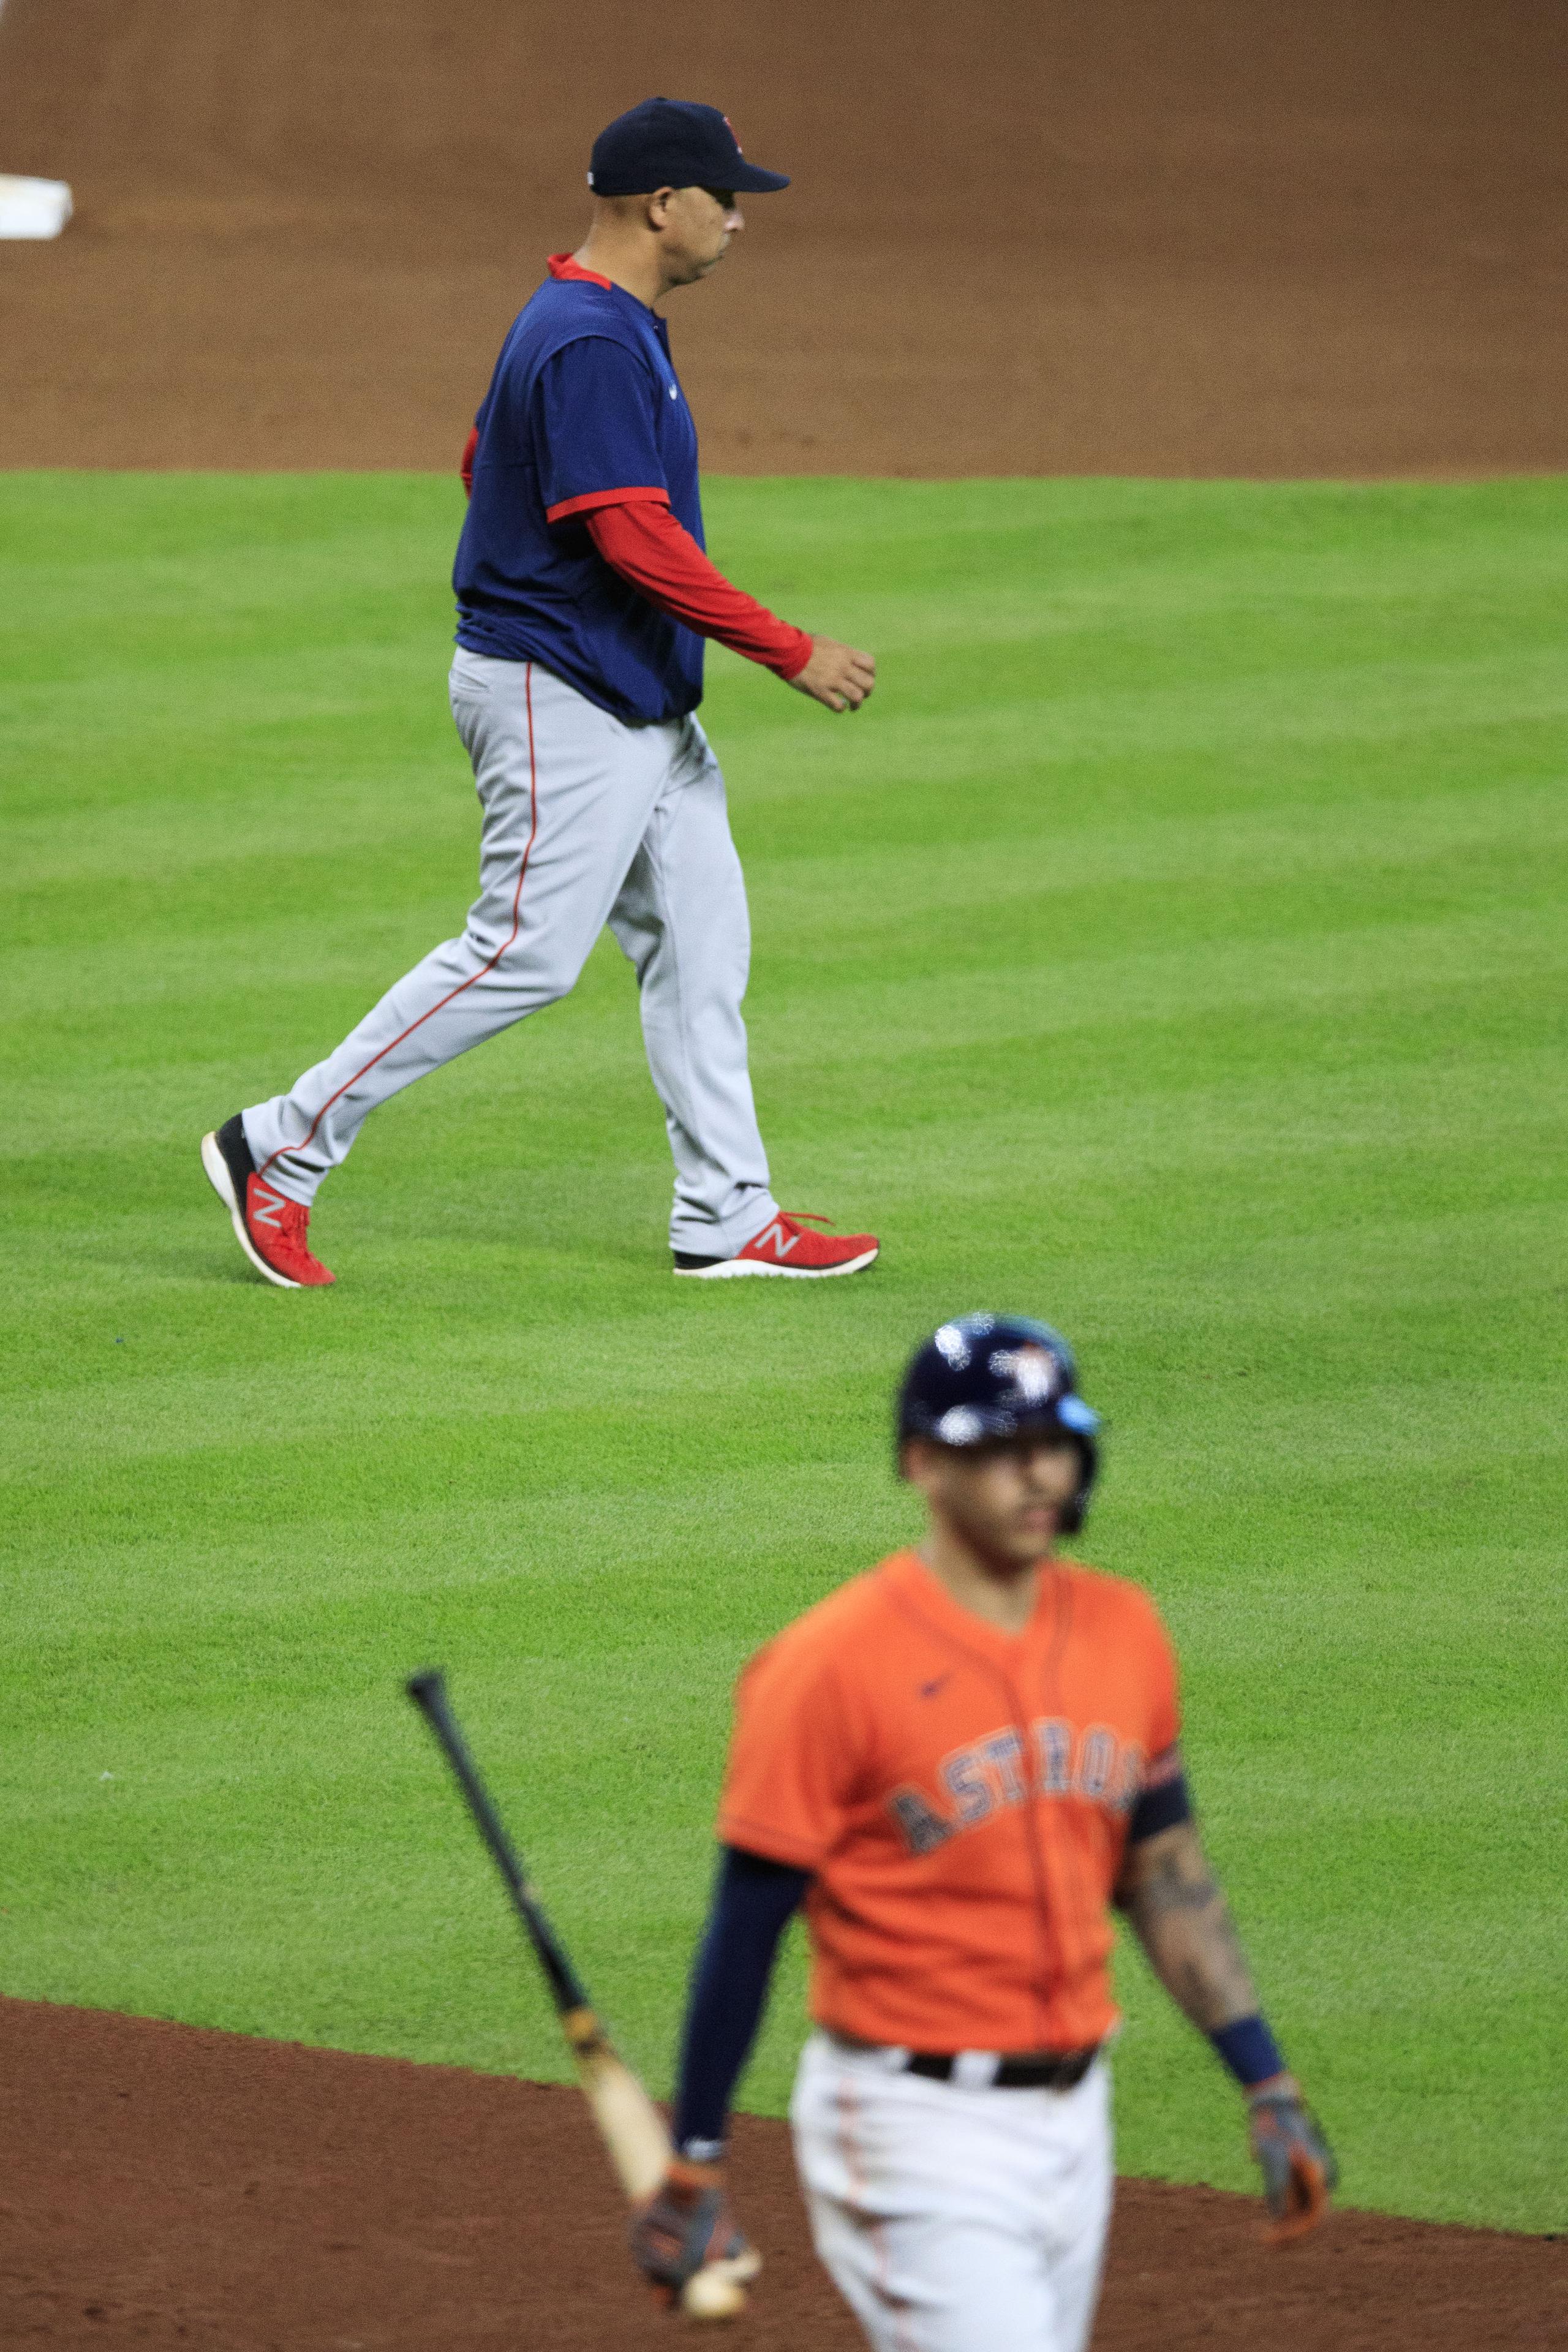 Uno de los jugadores que admira a Alex Cora lo es Carlos Correa. En la foto aparecen ambos. El piloto de los Red Sox camino a hacer un cambio de lanzador para enfrentar al campocorto de los Astros, quien en la foto va al área del banco de su equipo a esperar por el cambio del lanzador.